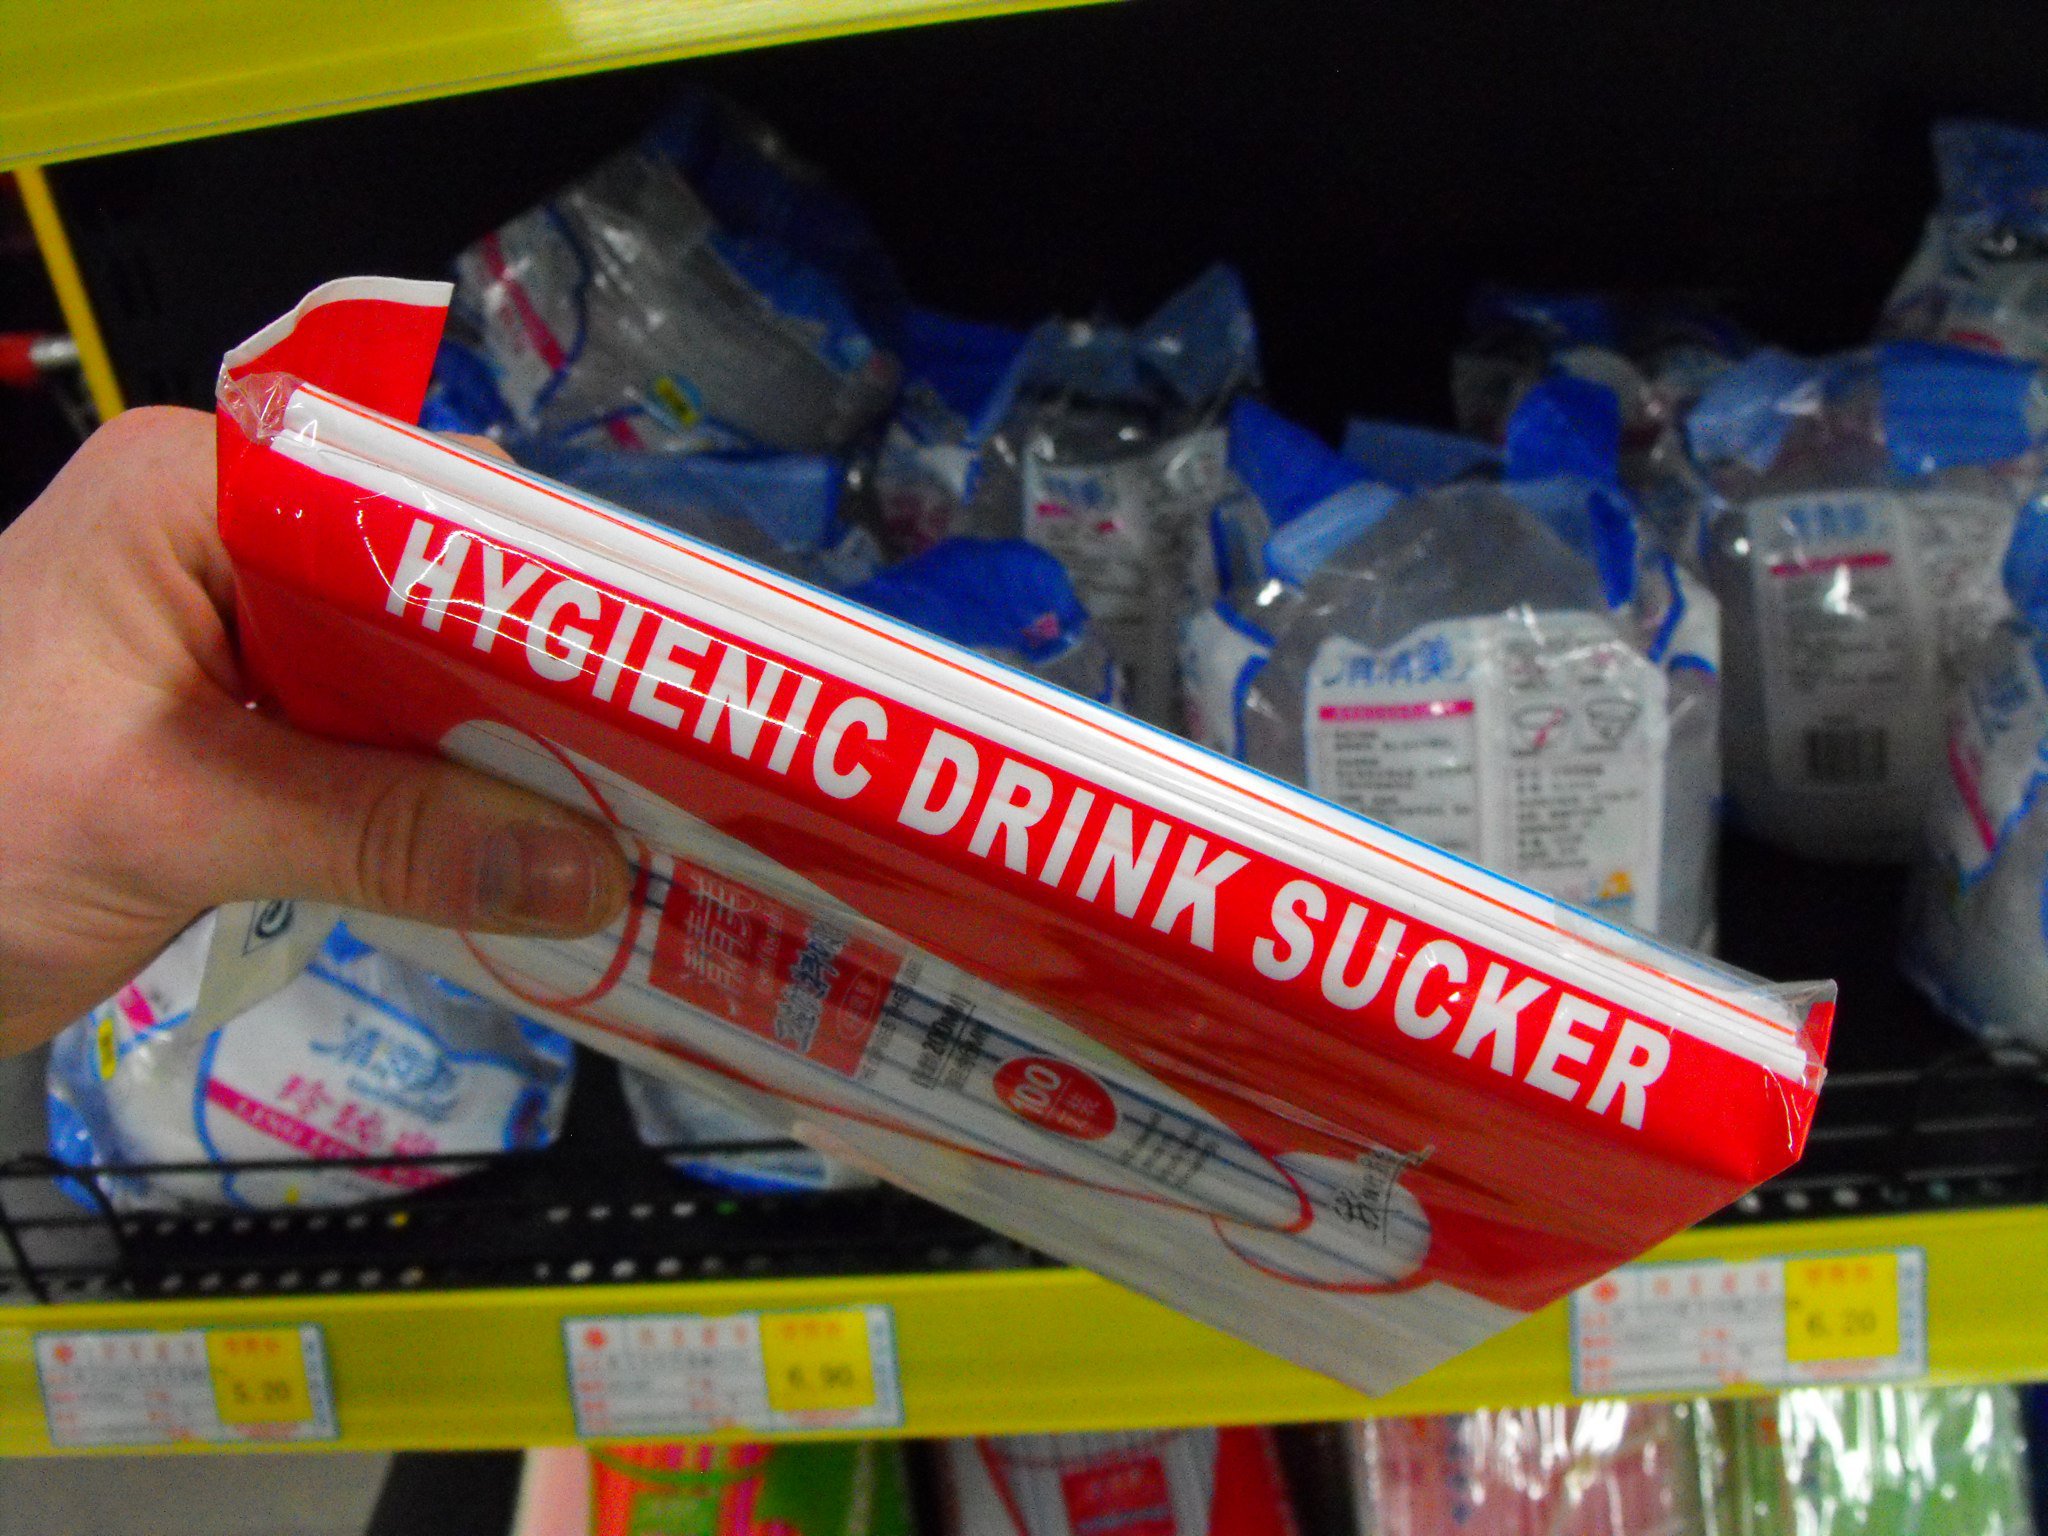 Hygienic drink sucker